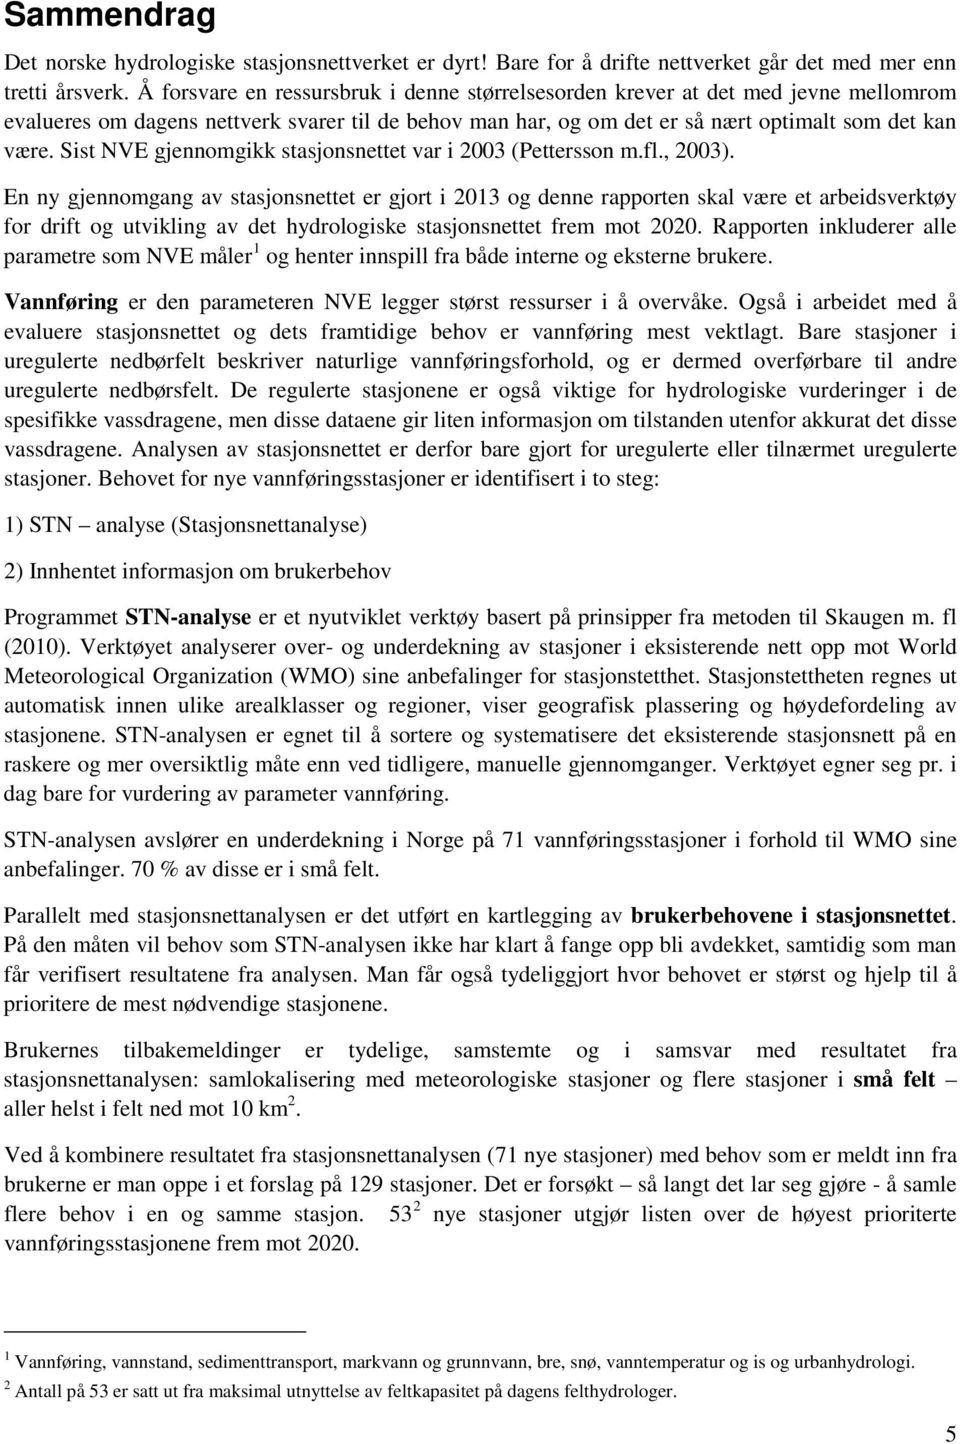 Sist NVE gjennomgikk stasjonsnettet var i 2003 (Pettersson m.fl., 2003).